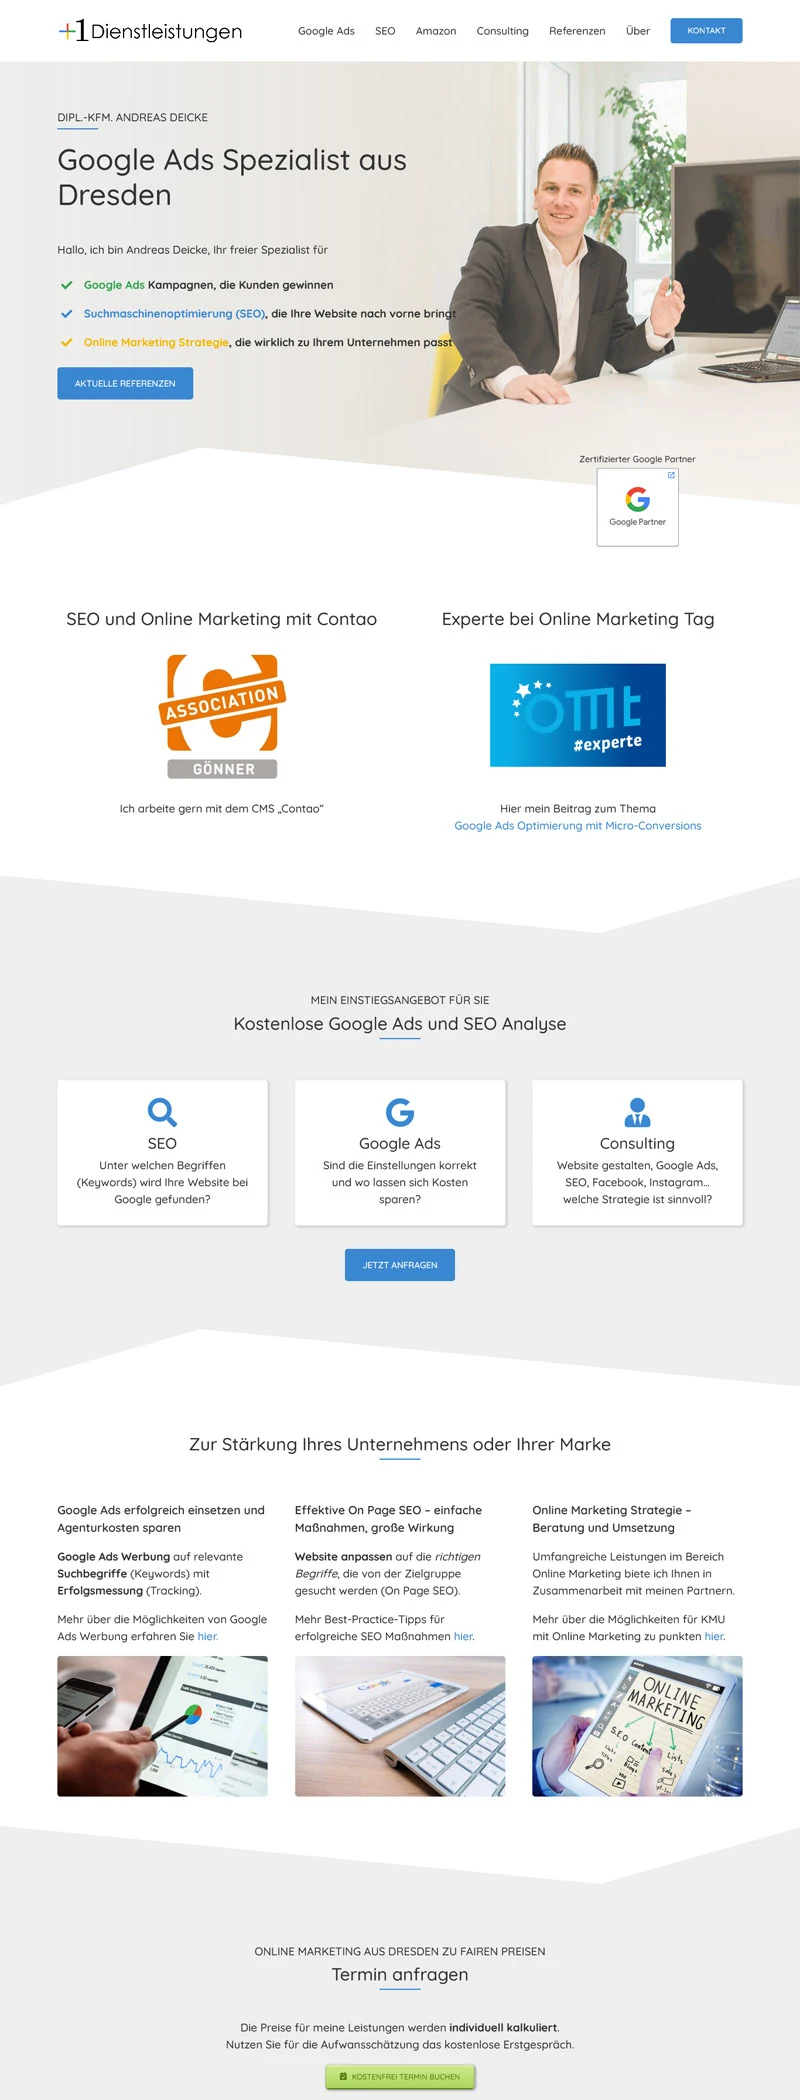 Plus 1 Dienstleistungen - Screenshot Fullsize Startseite